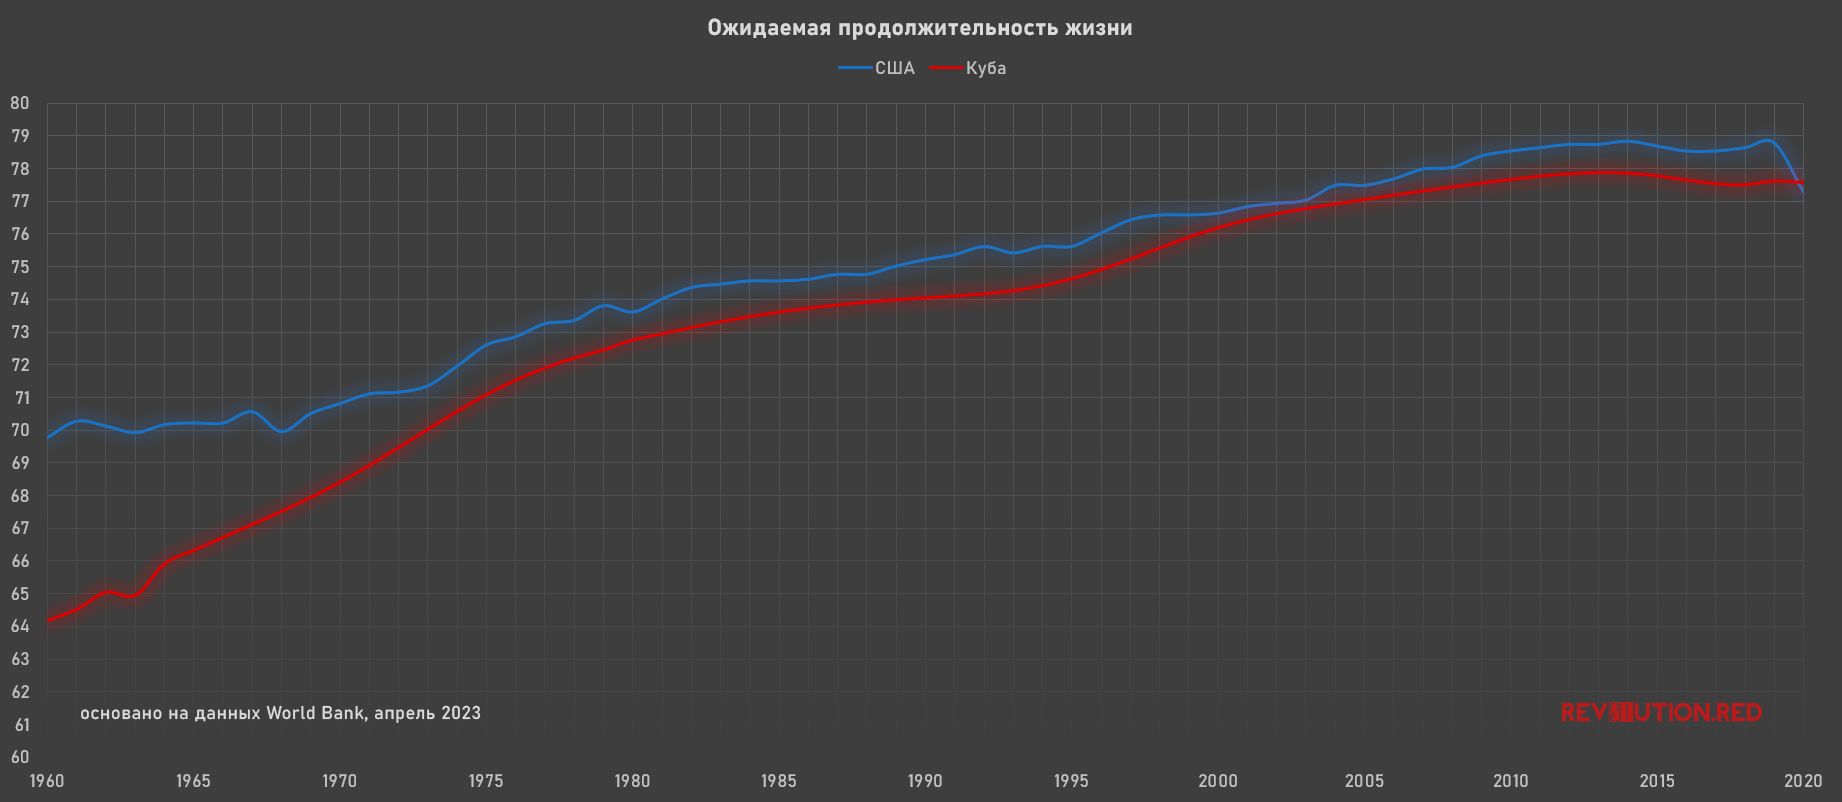 Ожидаемая продолжительность жизни в США и Кубе 1960—2020 годы, по данным World Bank на апрель 2023, график